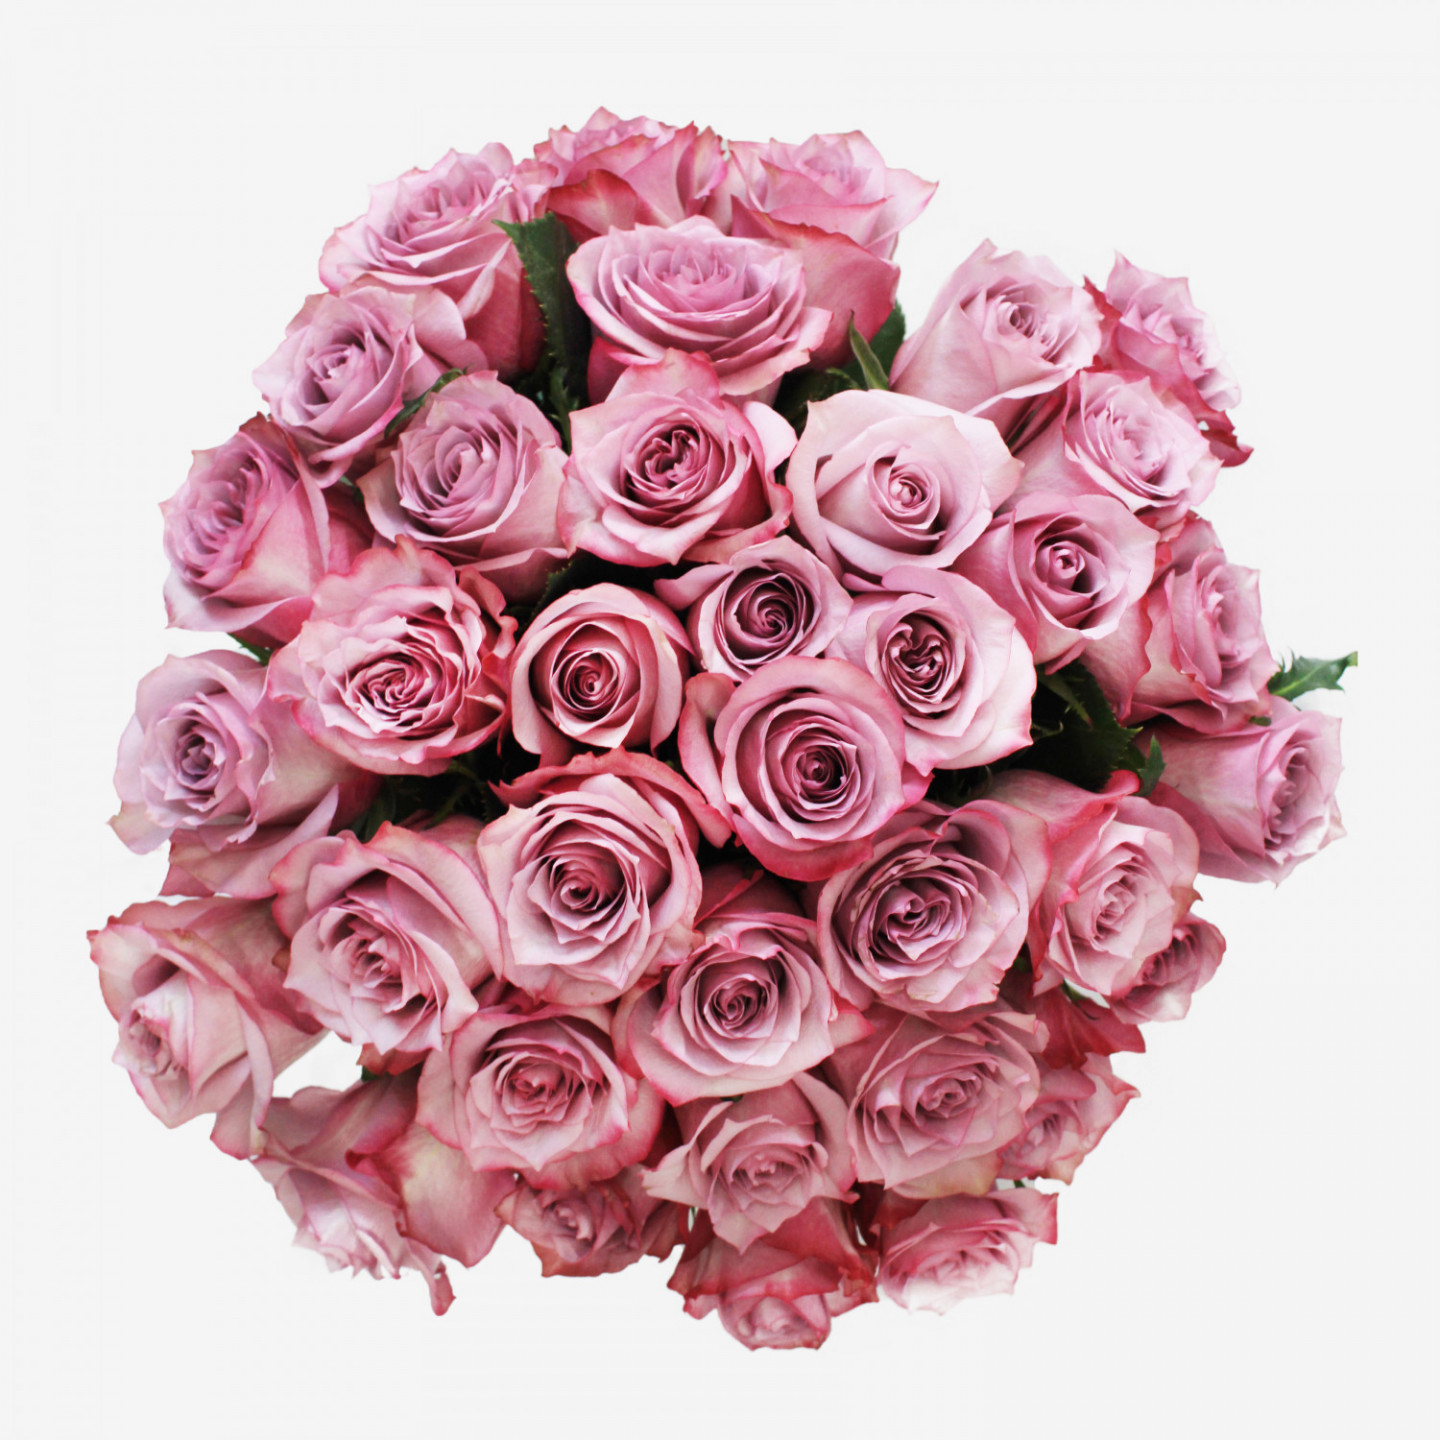 36 Deep Purple Roses Bouquet